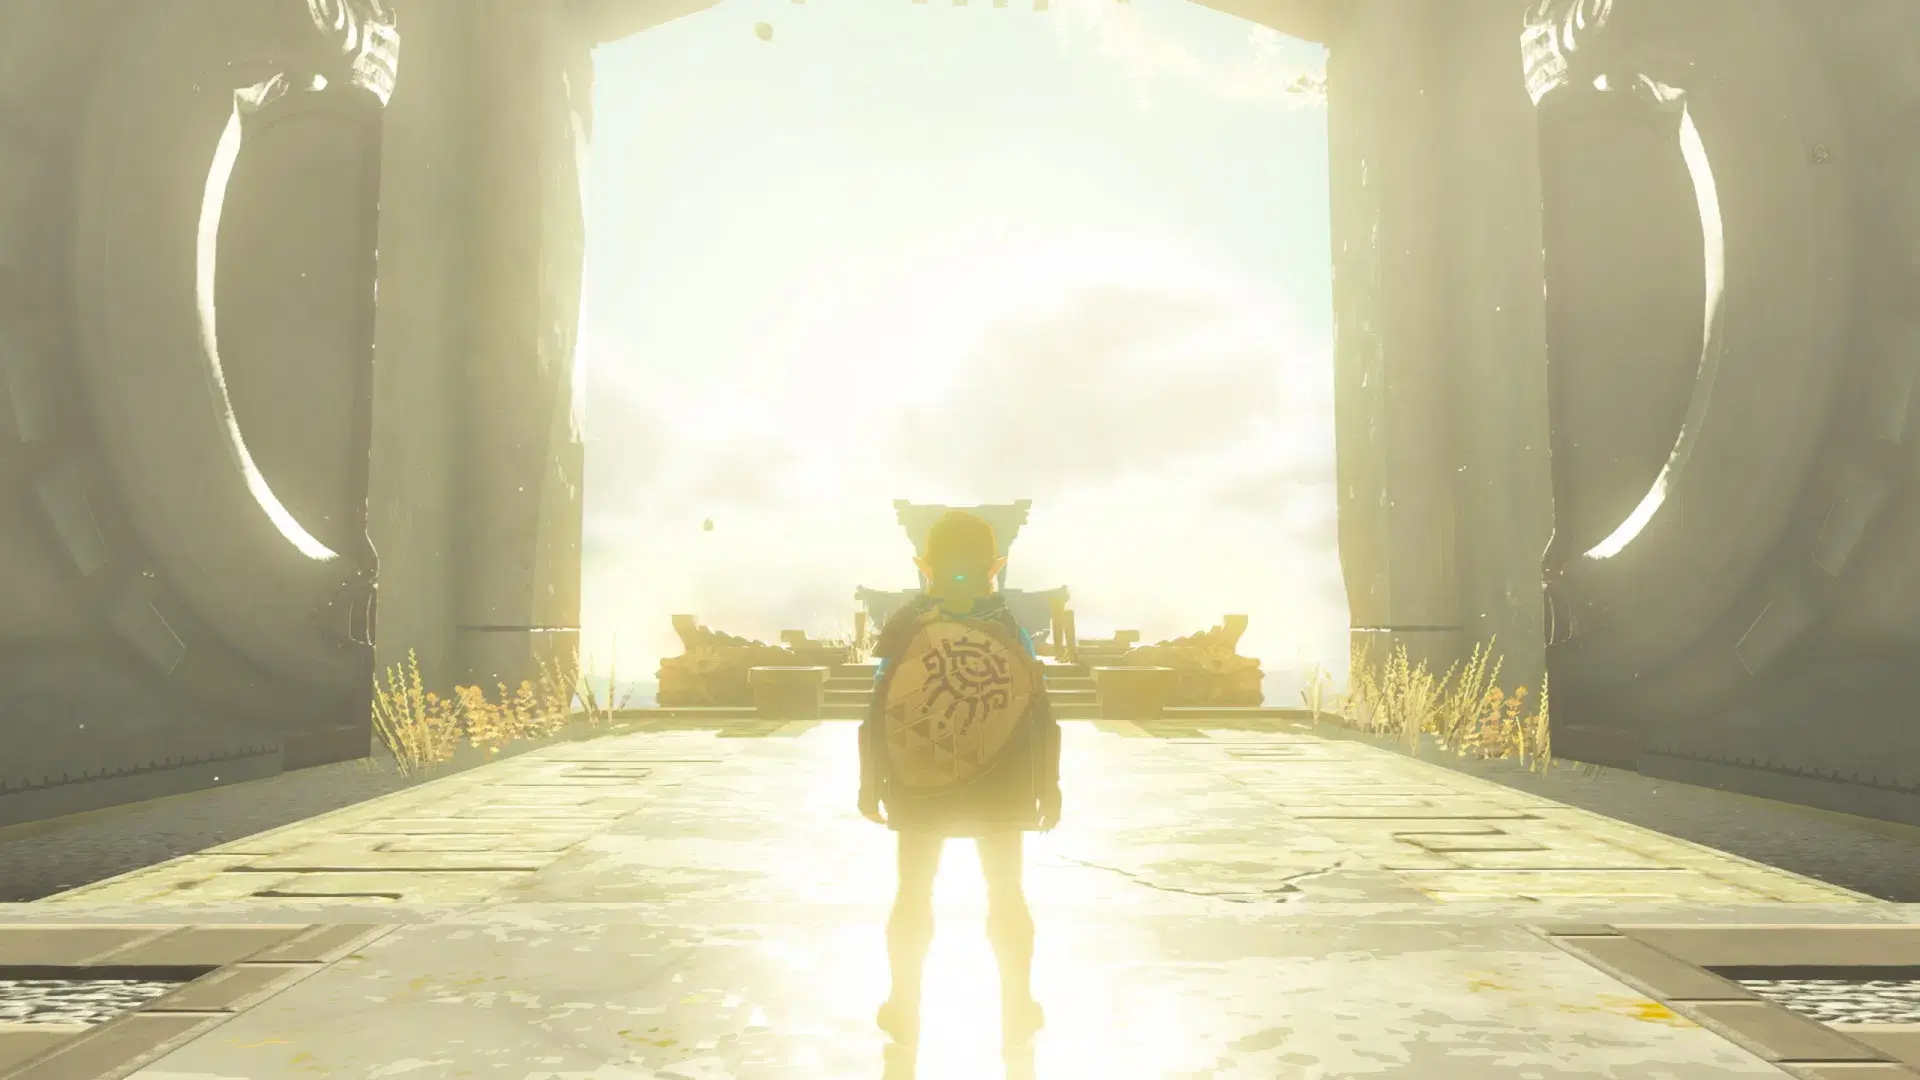 El amiibo de Link de Zelda: Tears of the Kingdom ya se puede pedir en la My  Nintendo Store - Nintenderos